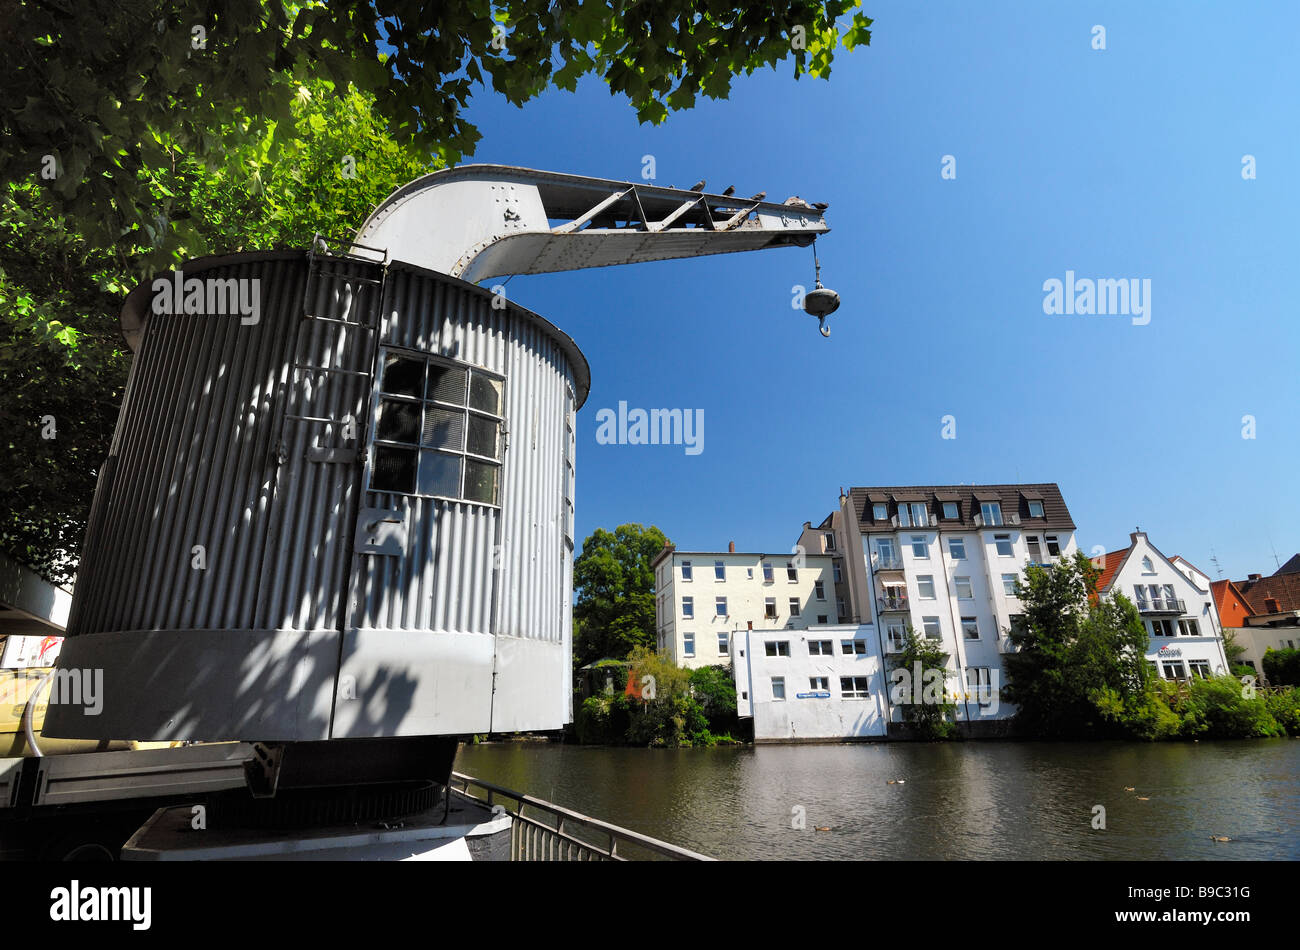 Historic crane at the waterside of the Serrahn in Bergedorf, Hamburg. Stock Photo